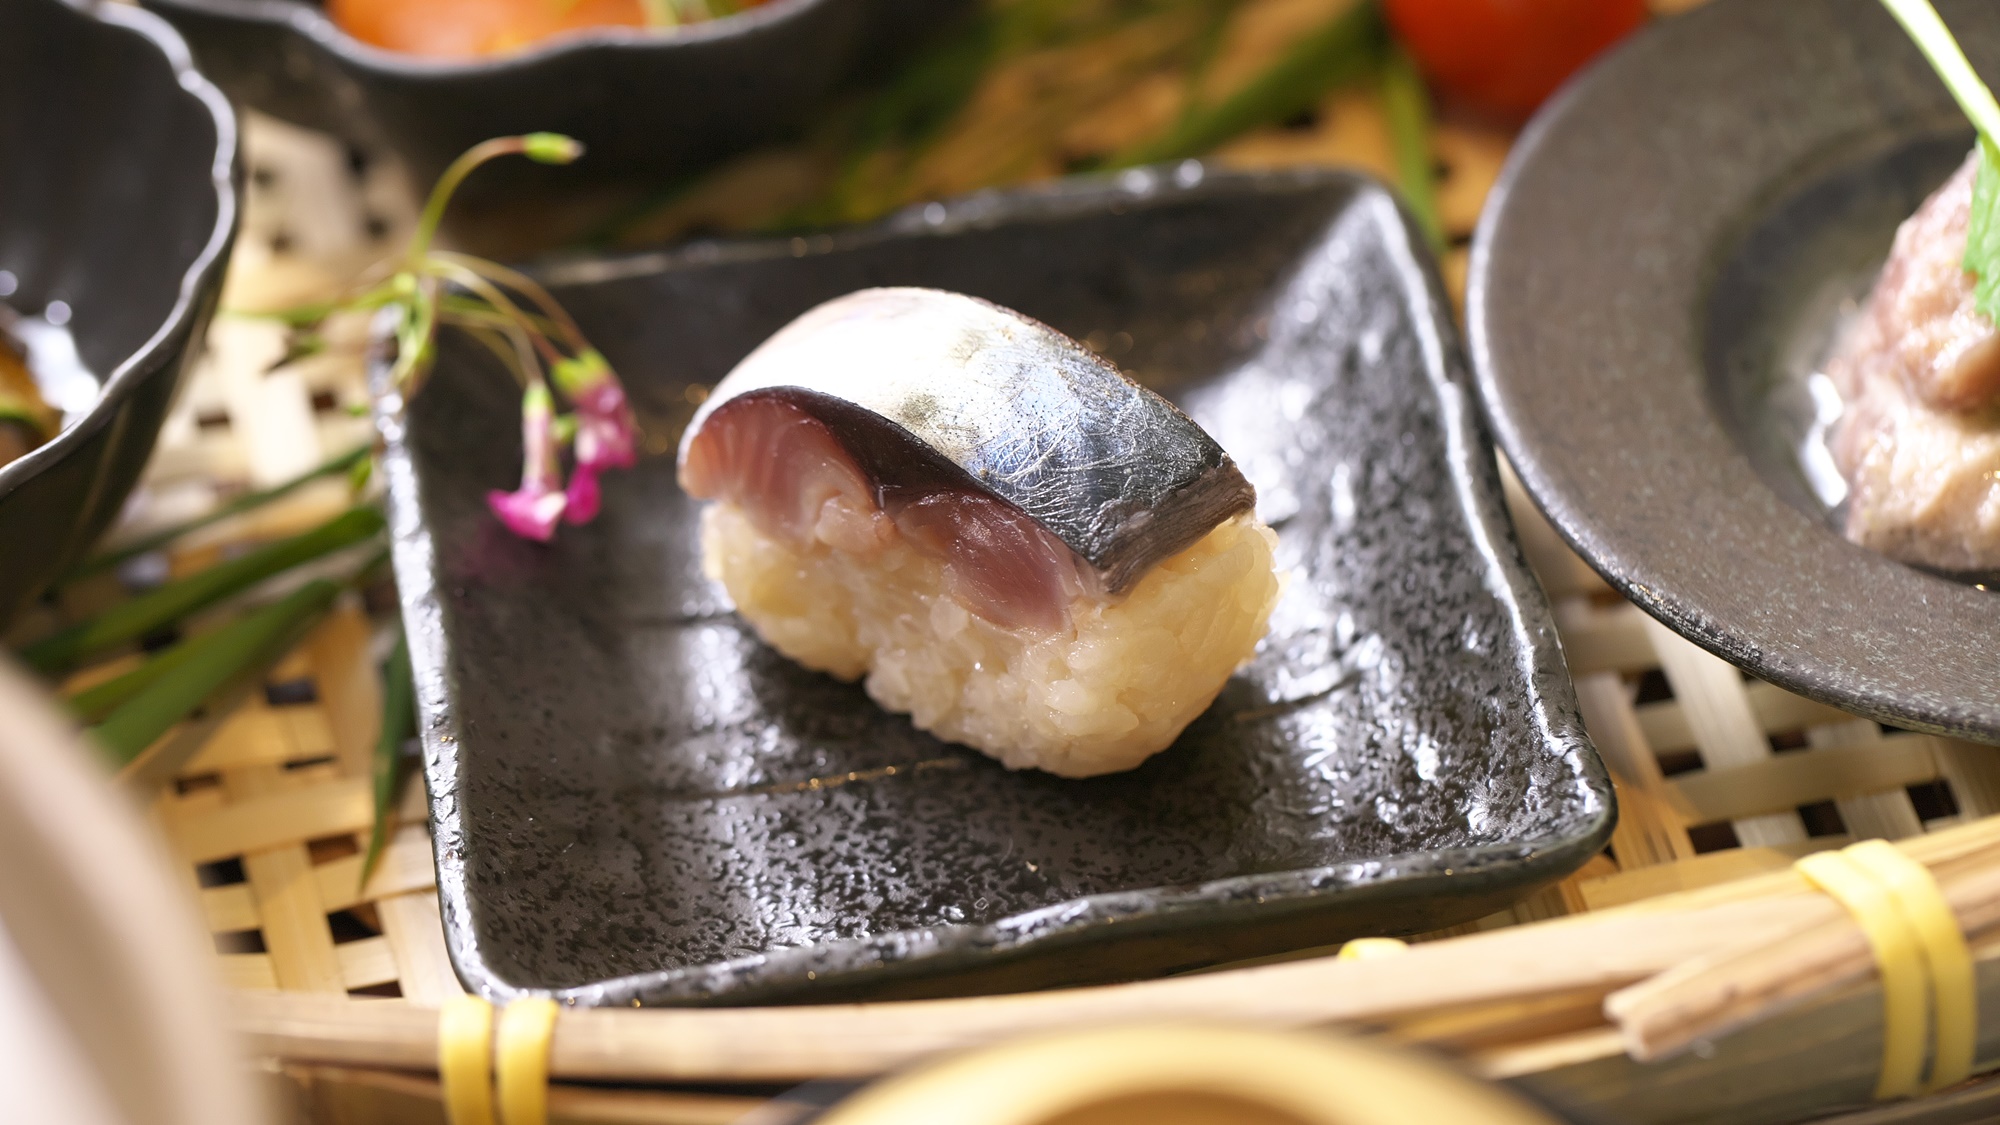 【夕食一例】炙りしめ鯖寿司。パリッとした食感と風味は食欲をそそります。